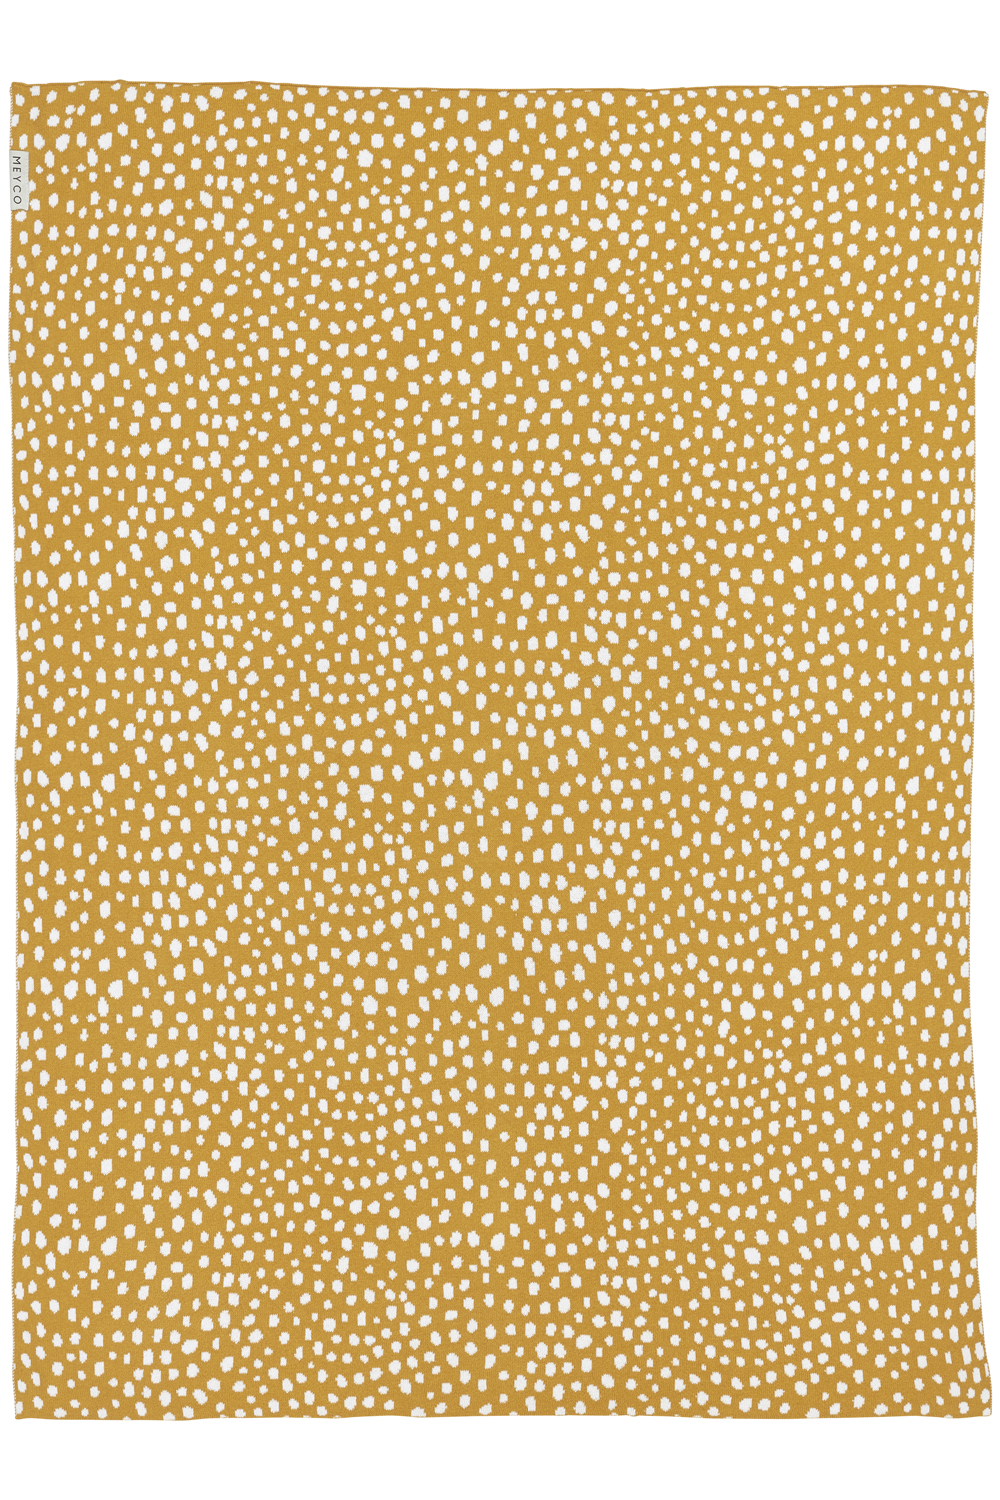 Wiegdeken Cheetah - Honey Gold - 75x100cm